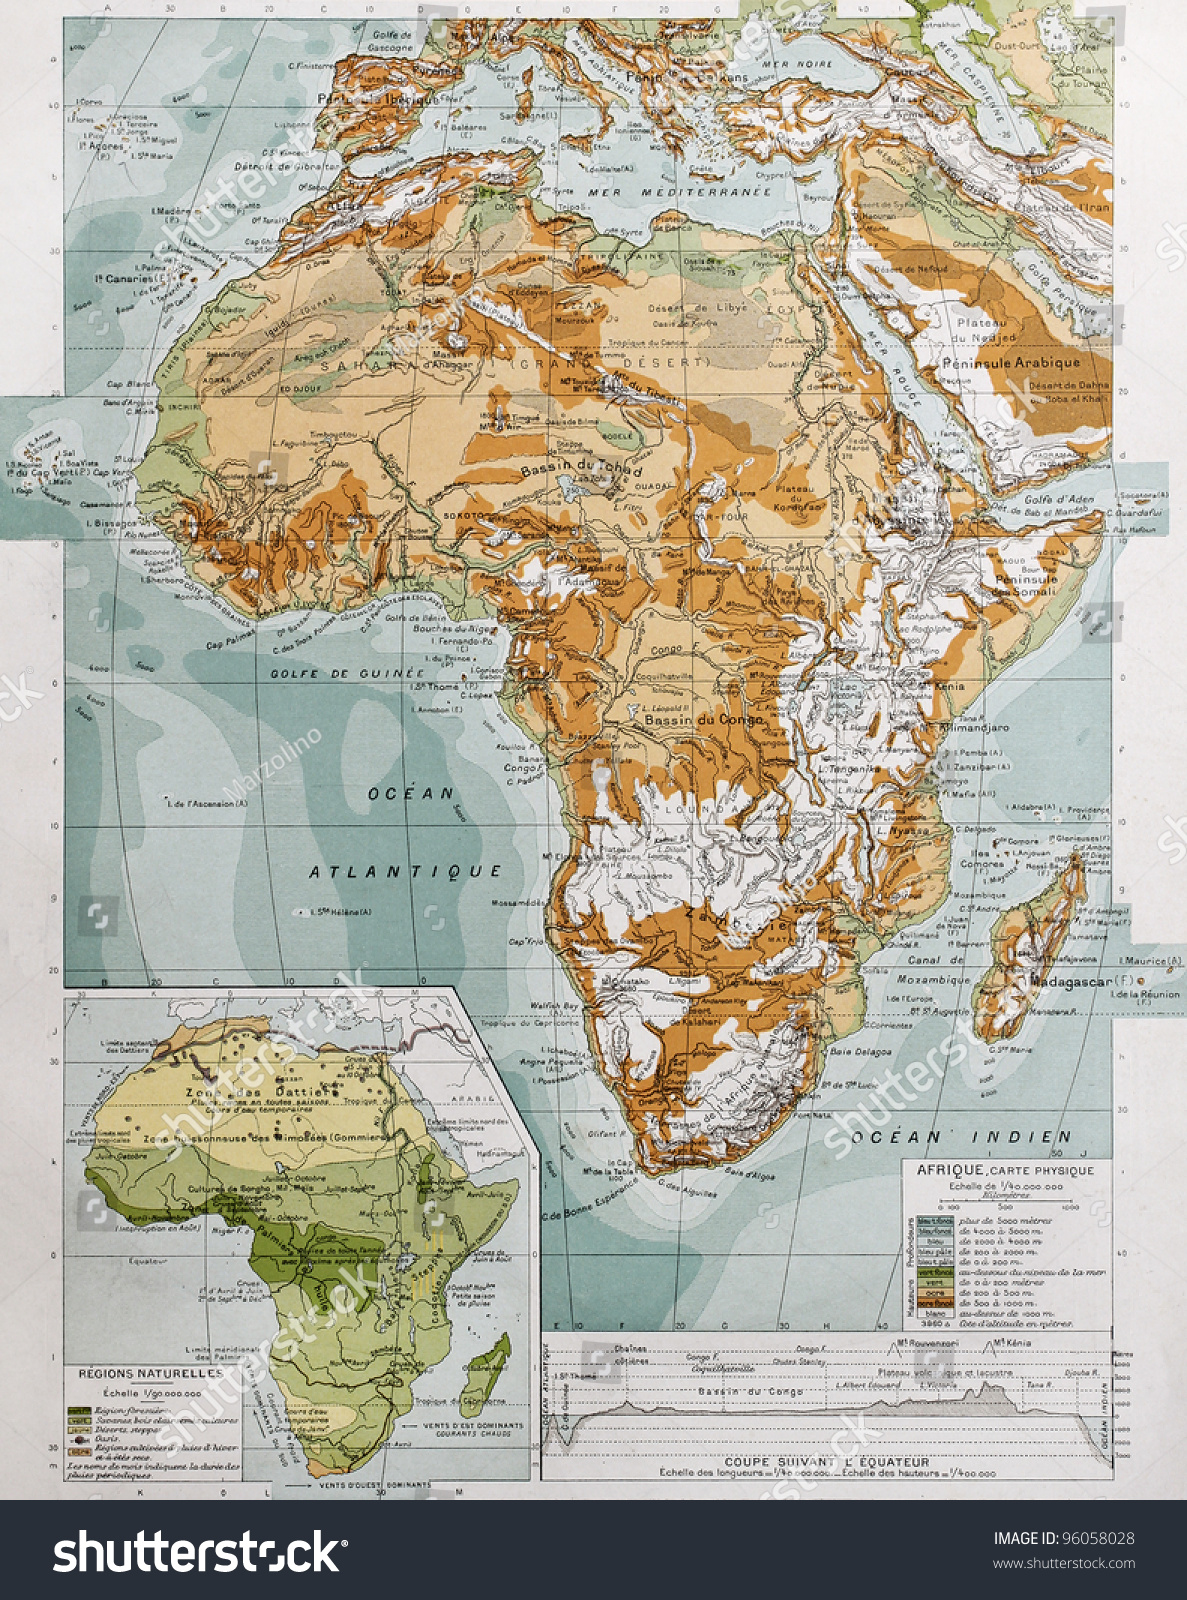 非洲物理图谱与自然区域插入地图。保罗维达尔